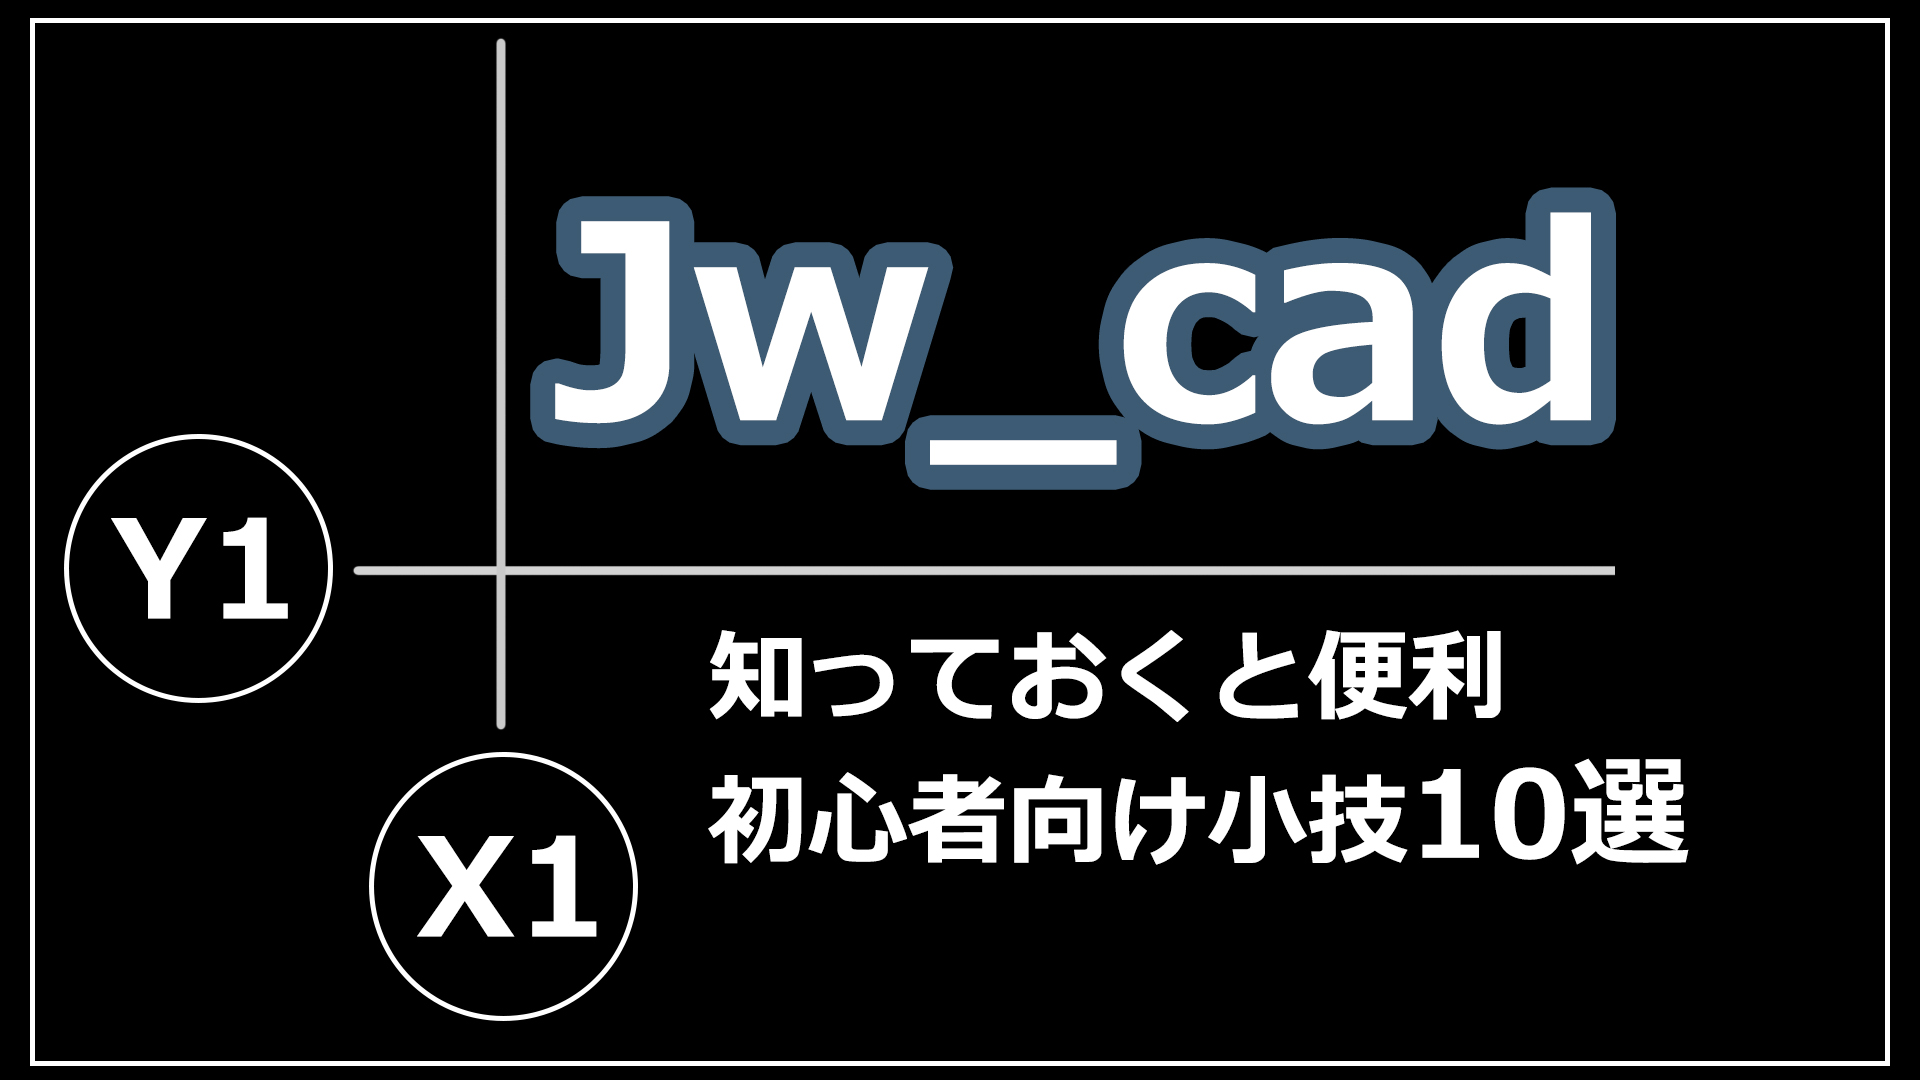 【Jw_Cad】知っておくと便利な知識・小技10選（初心者向け）